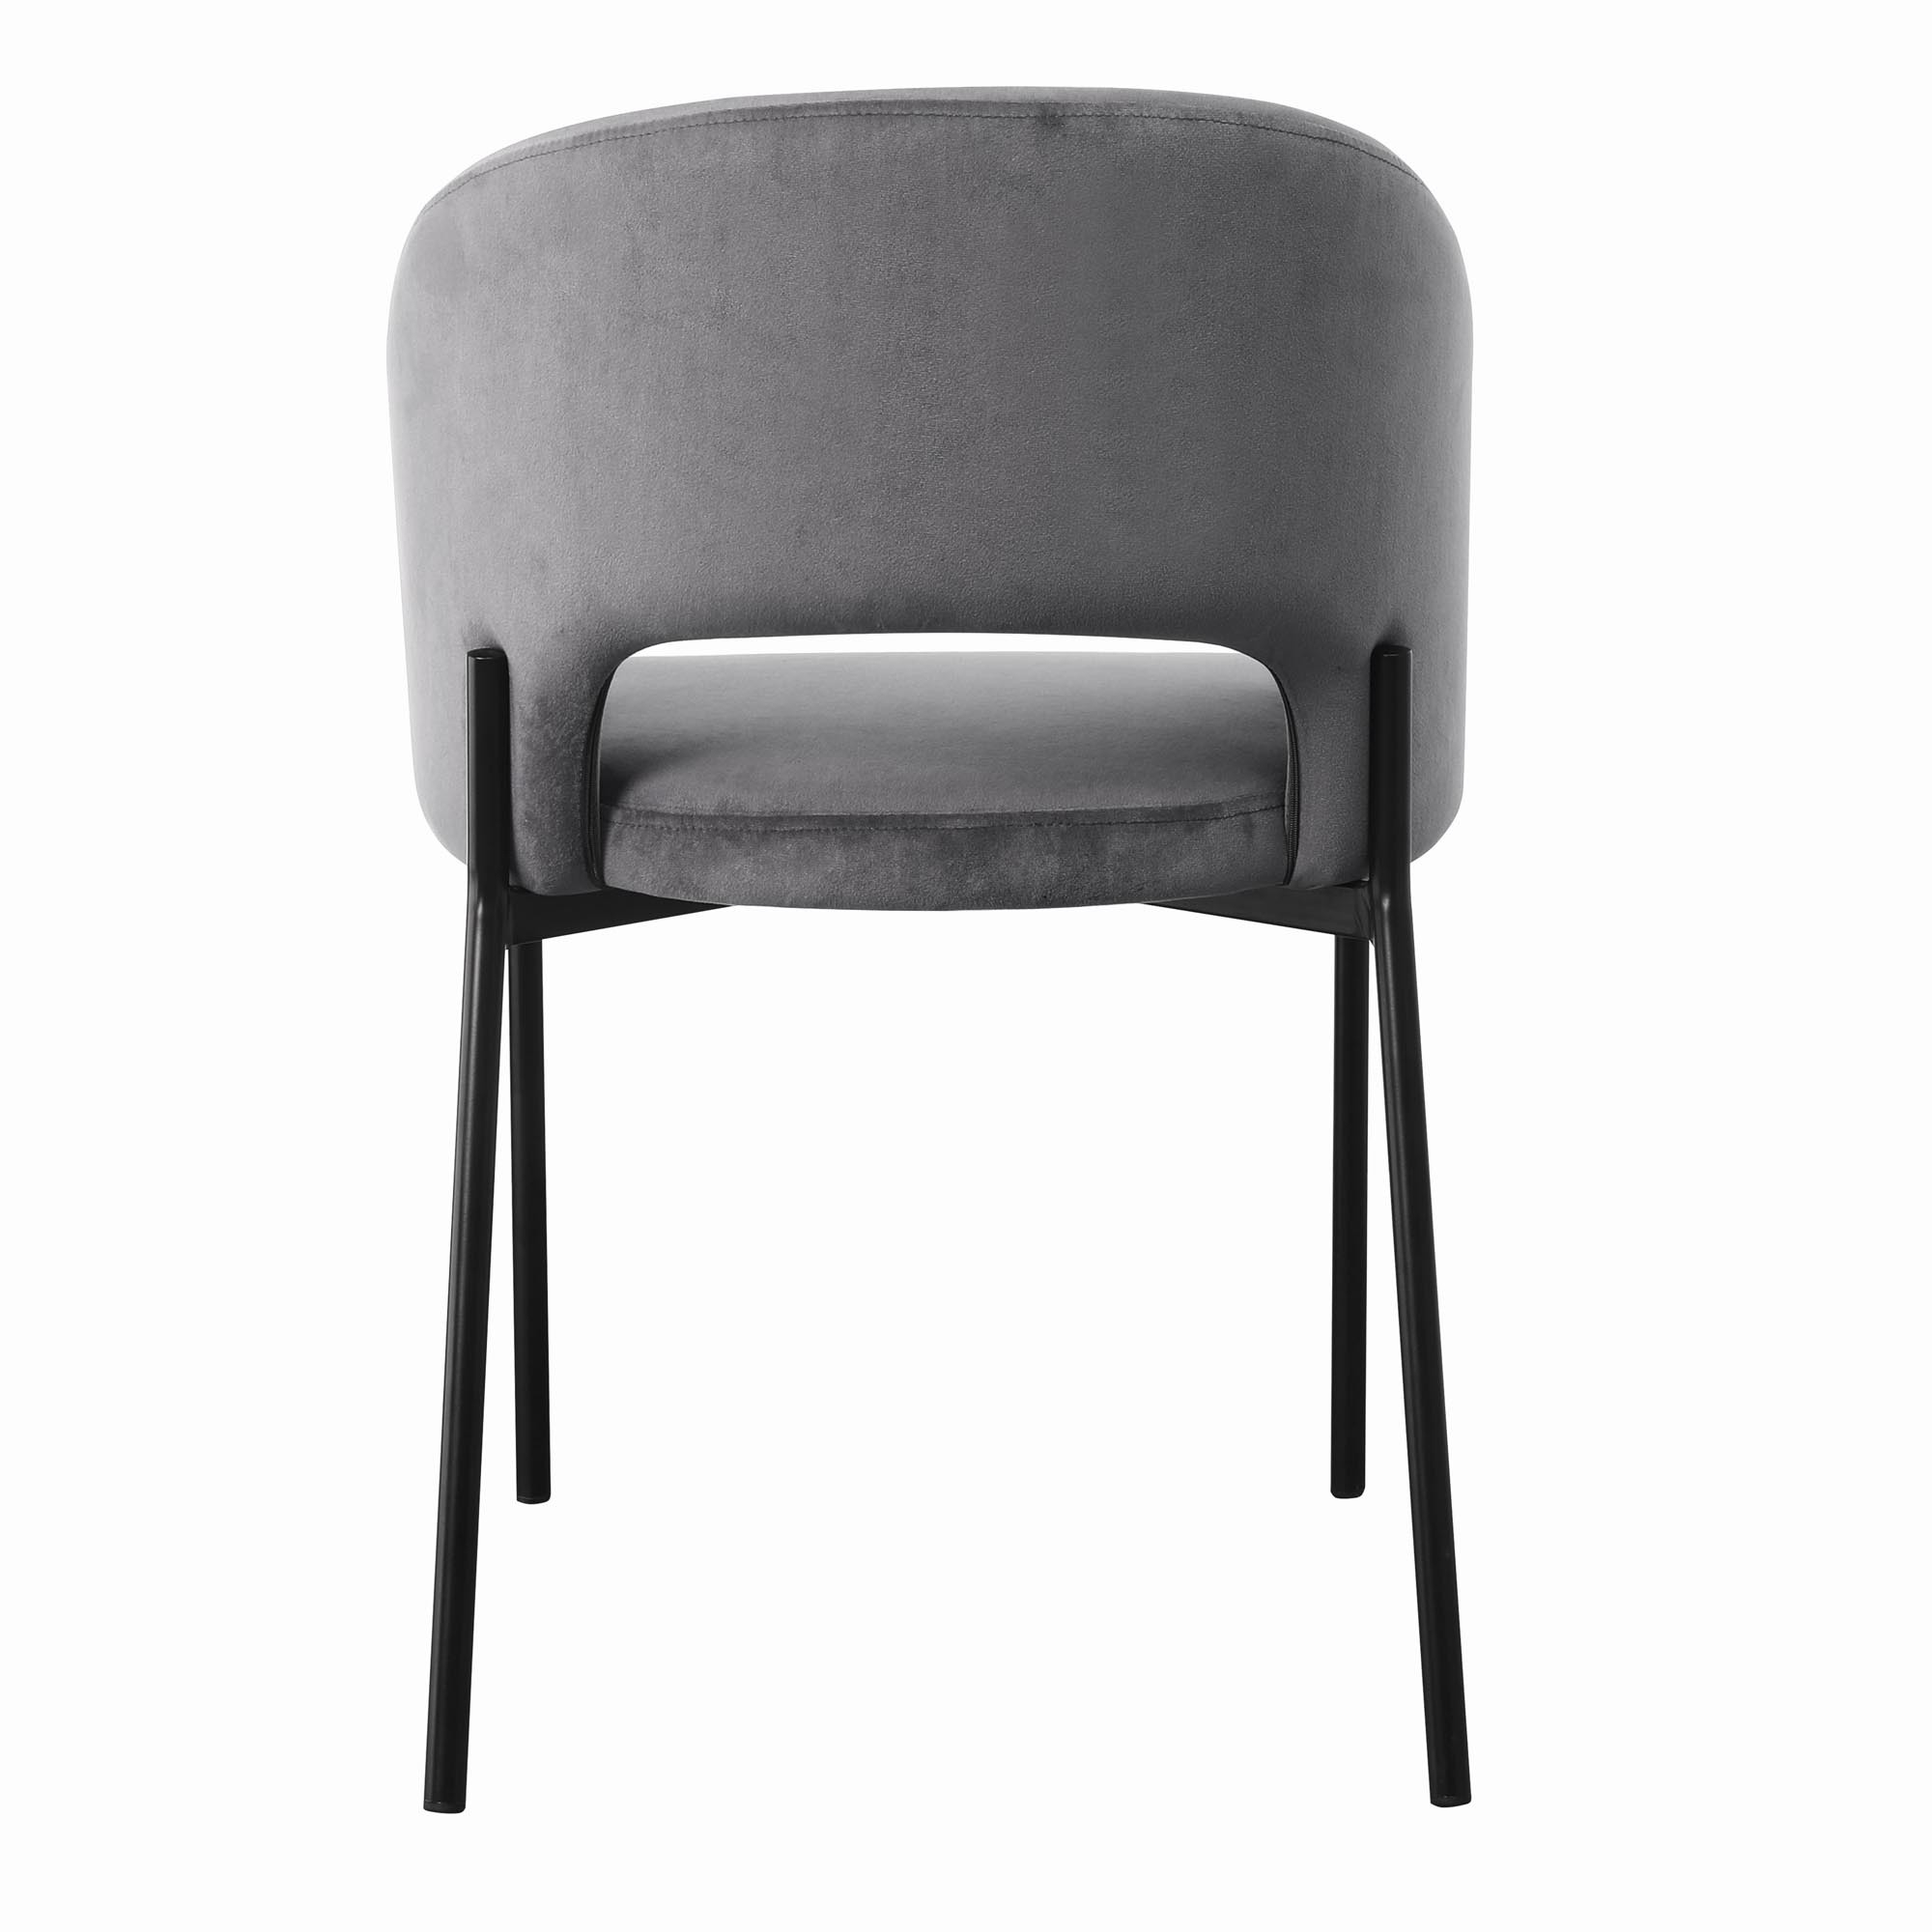 K455 krzesło, kolor: popielaty